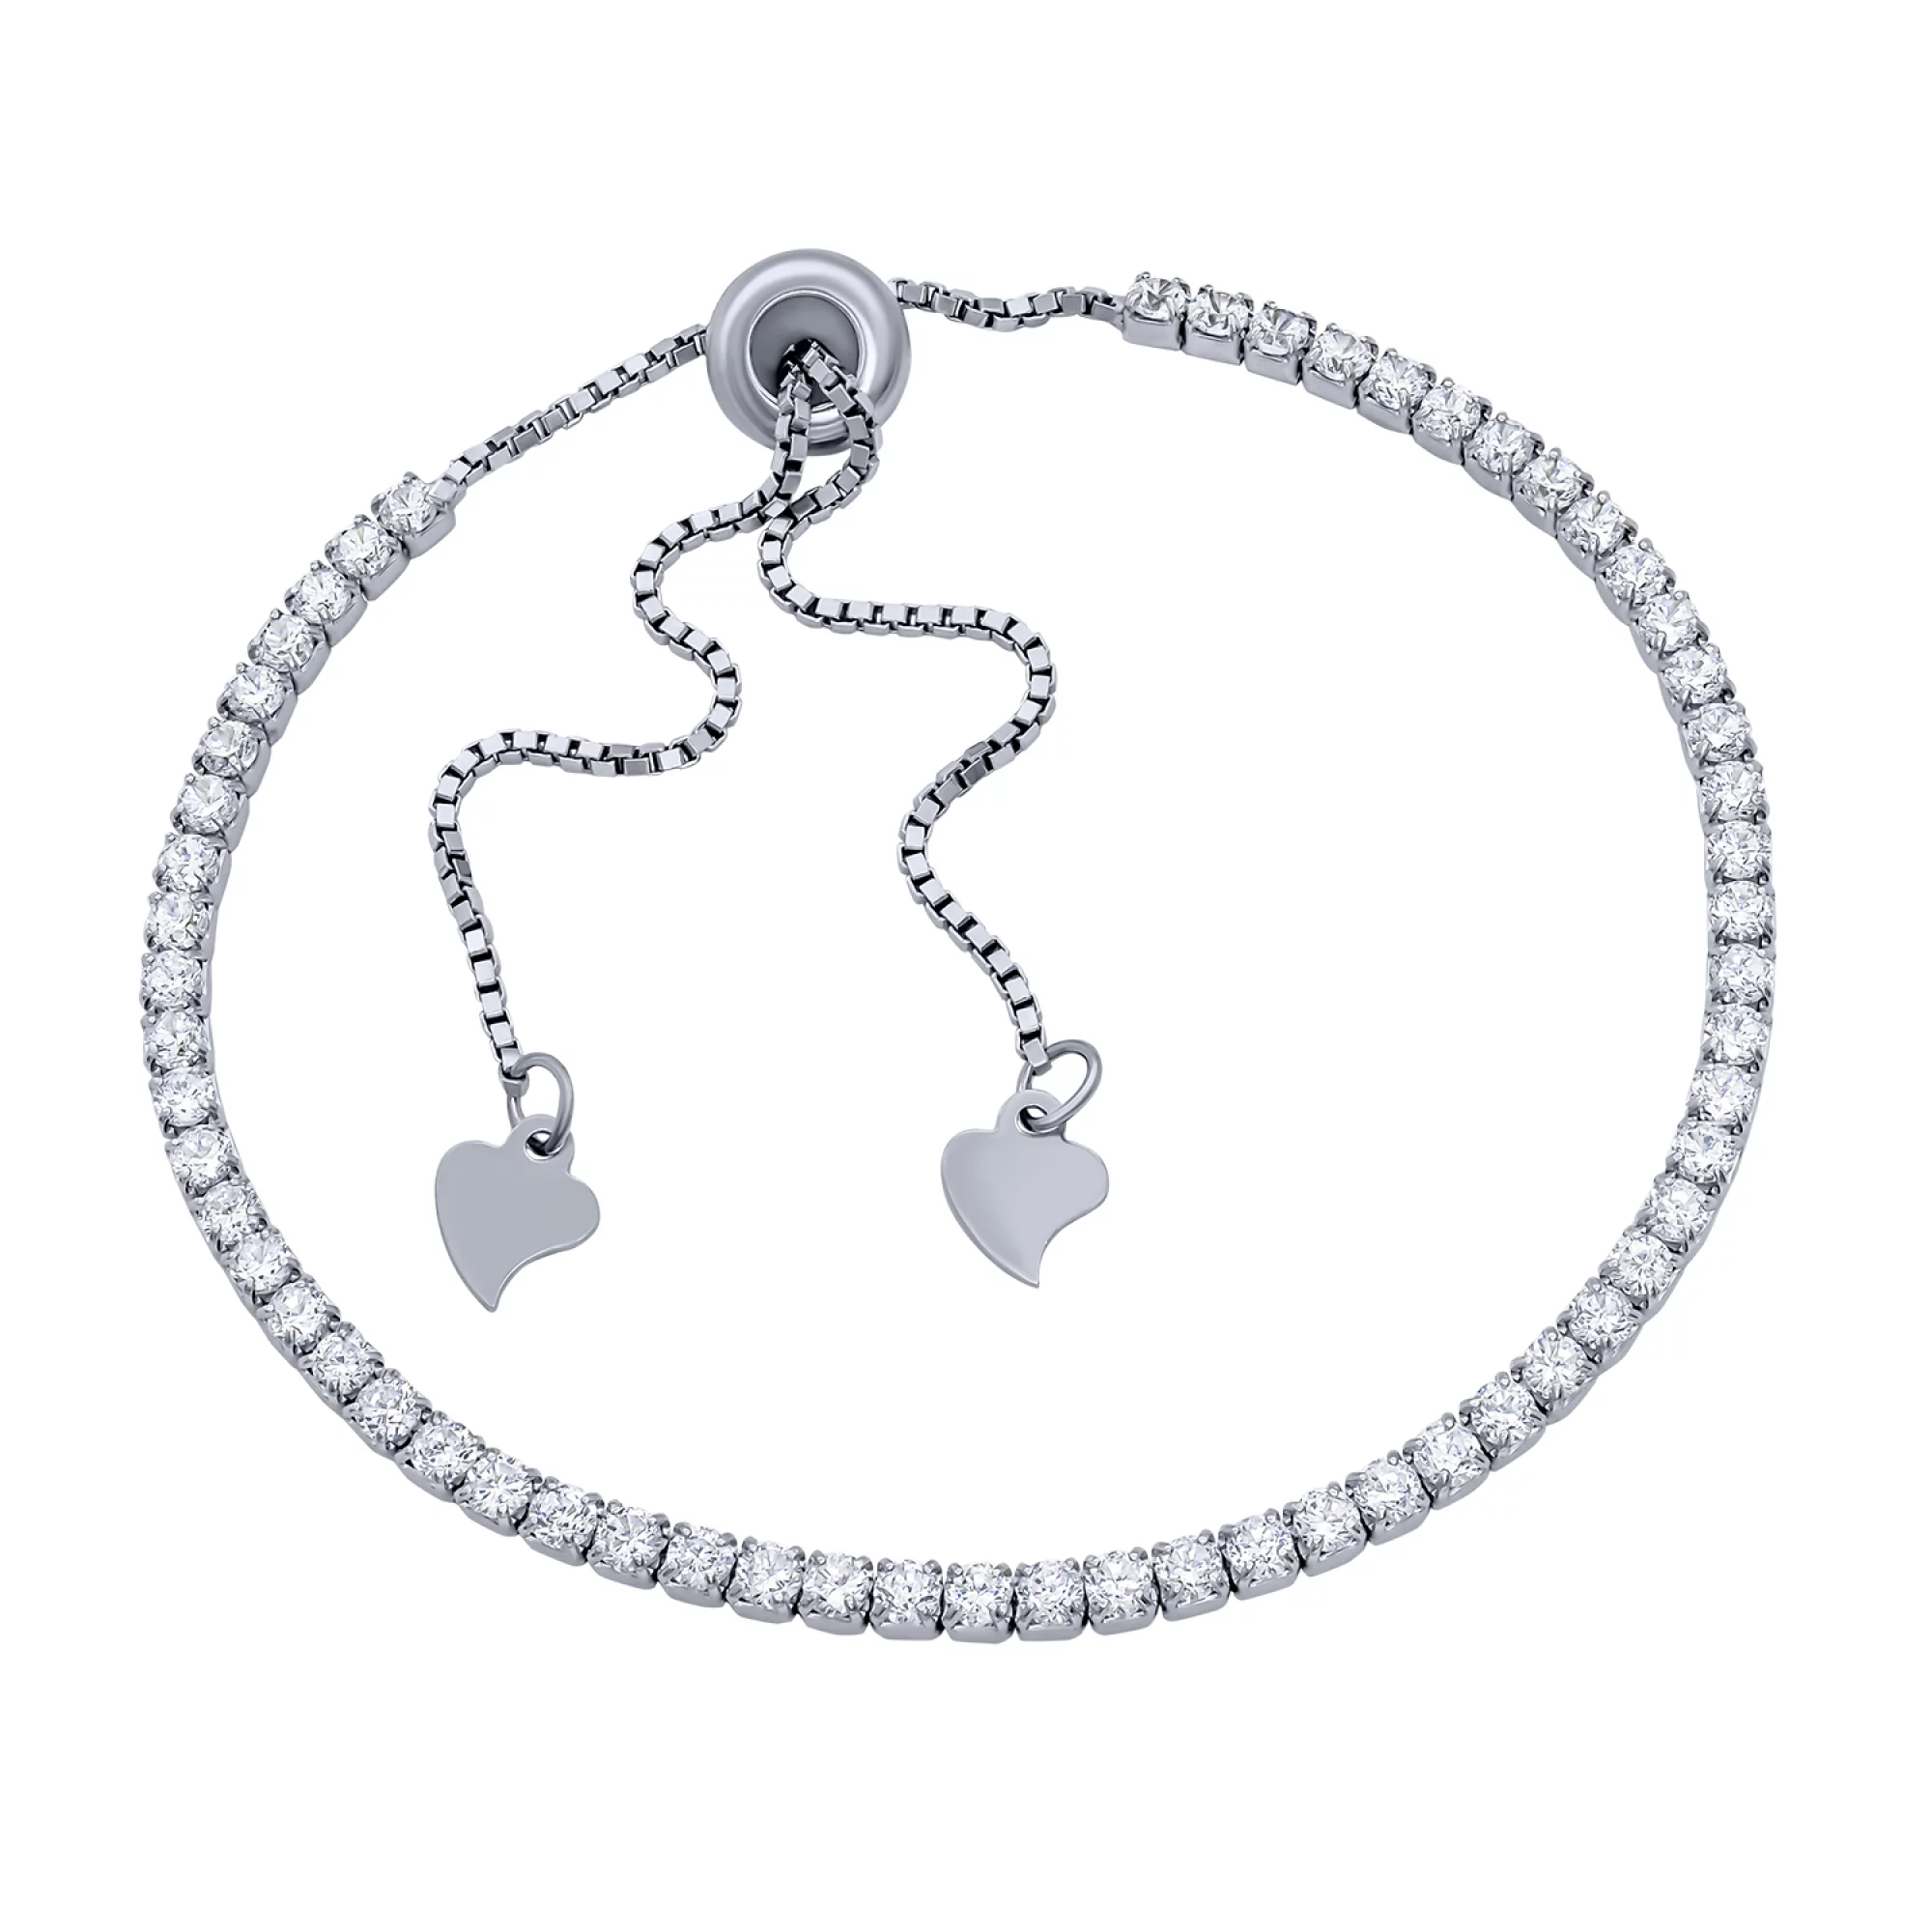 Теннисный серебряный браслет с дорожкой фианитов - 1715683 – изображение 1